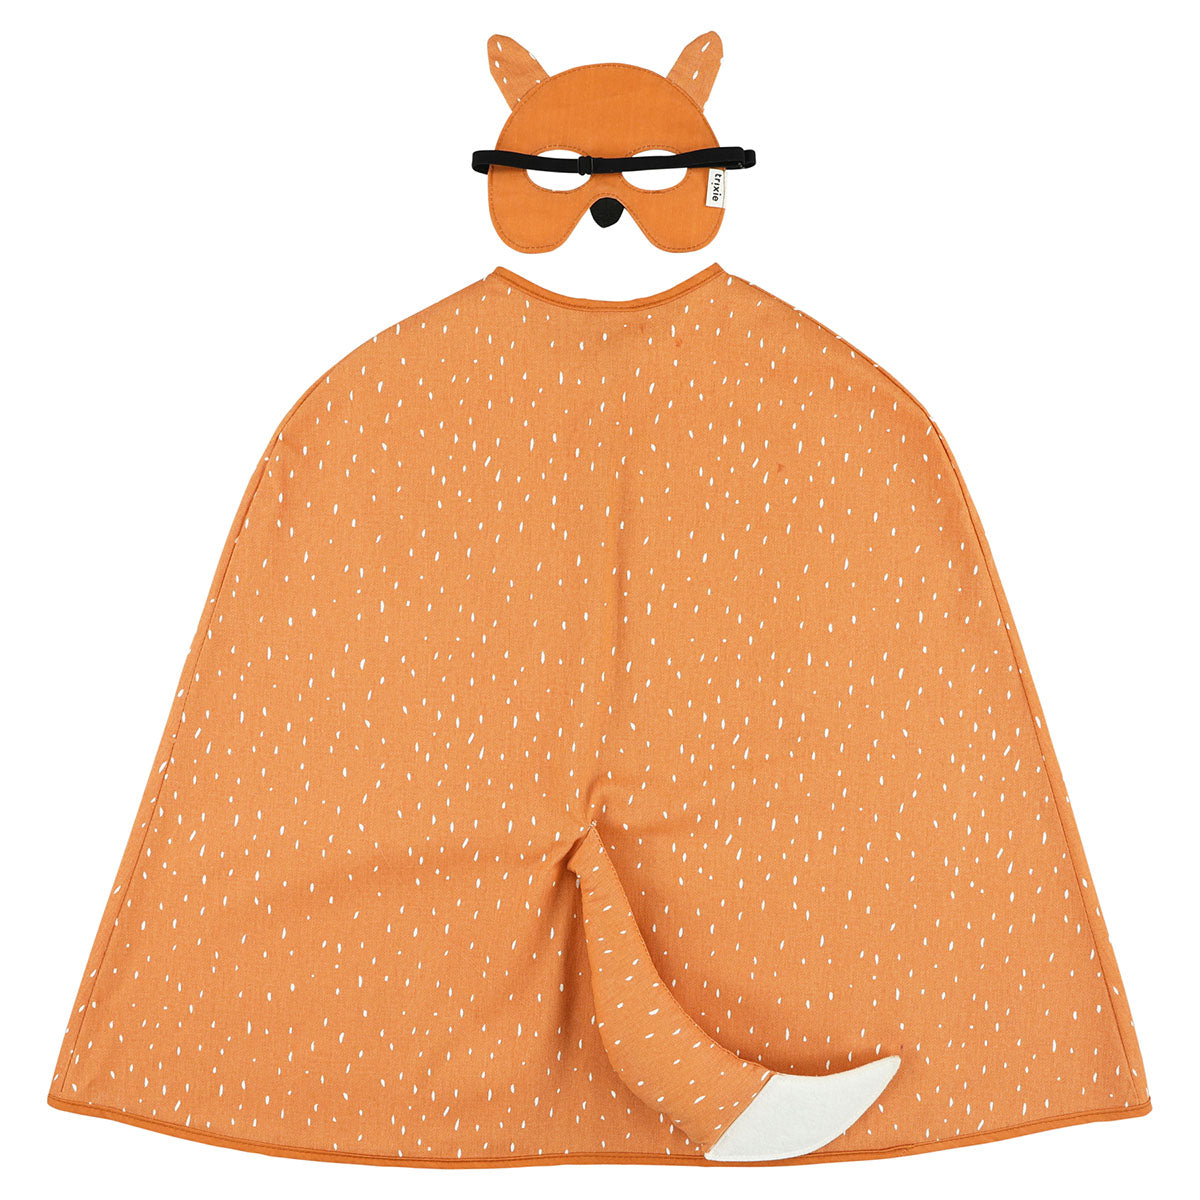 Laat je fantasie de vrije loop met de Trixie Mr. Fox cape en masker! Deze betoverende verkleedset transformeert jou in een stoere vos, compleet met een speels staartje aan de achterkant van de cape. VanZus.